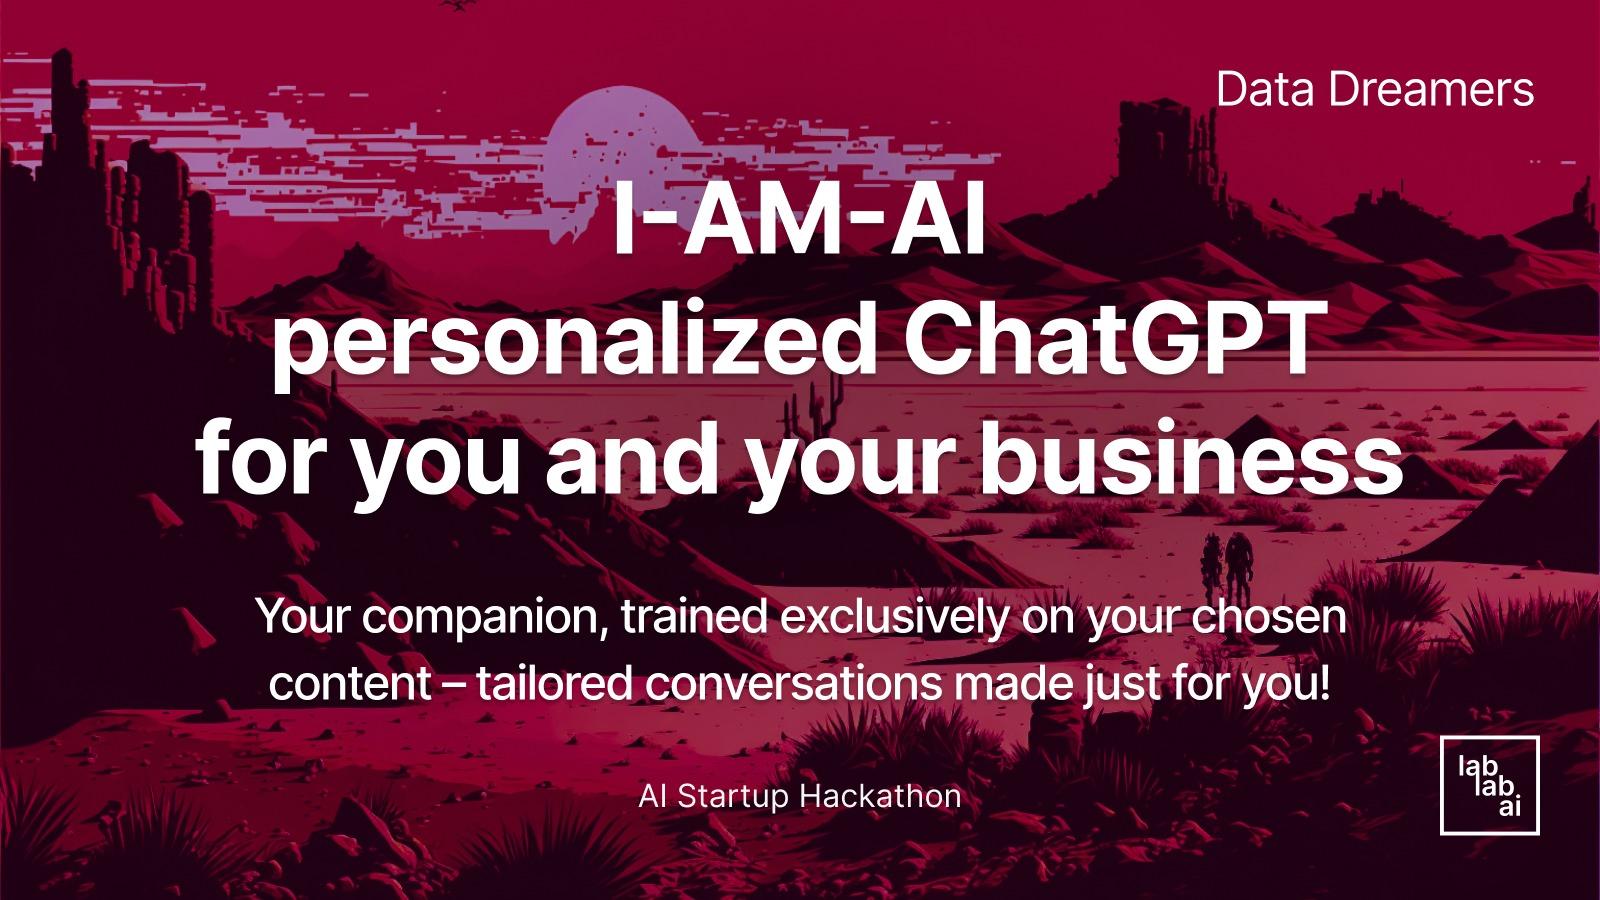  I AM I personalized ChatGPT